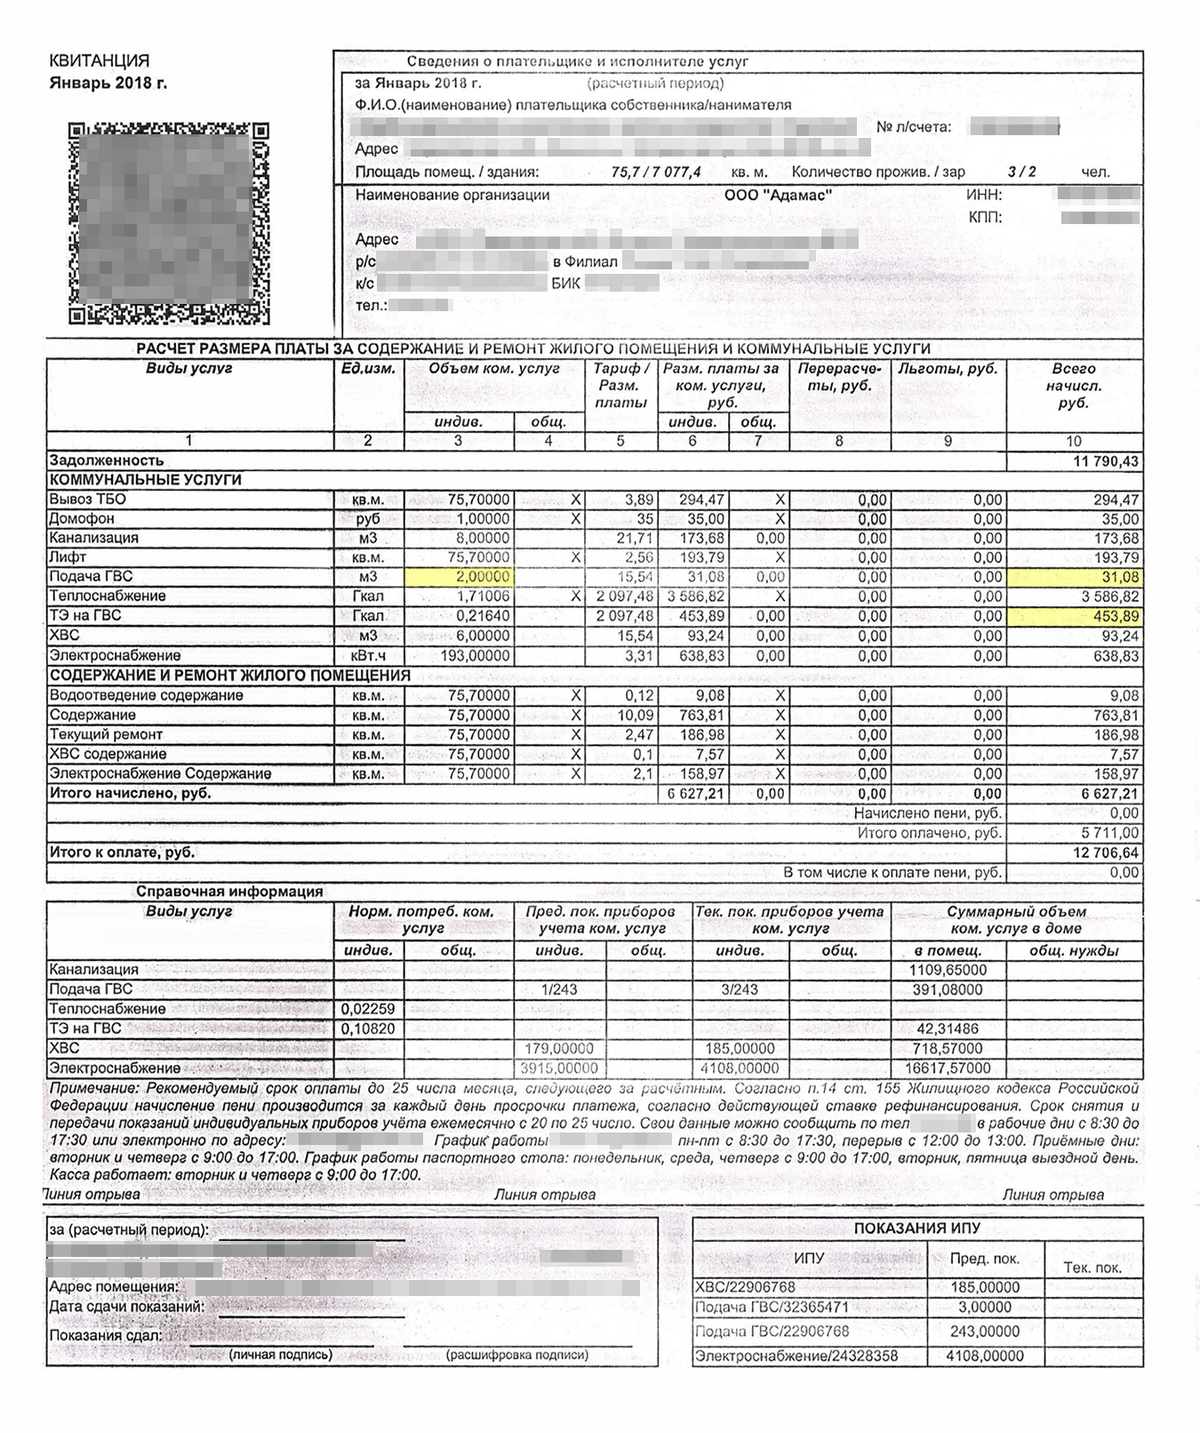 Пример платежного документа с расчетами на подачу горячей воды и теплоэнергию на ее приготовление. За январь 2018&nbsp;года вышло 242 рубля за 1 м³ горячей воды: (31,8&nbsp;+&nbsp;453,89)&nbsp;÷&nbsp;2&nbsp;=&nbsp;242,49 <span class=ruble>Р</span>